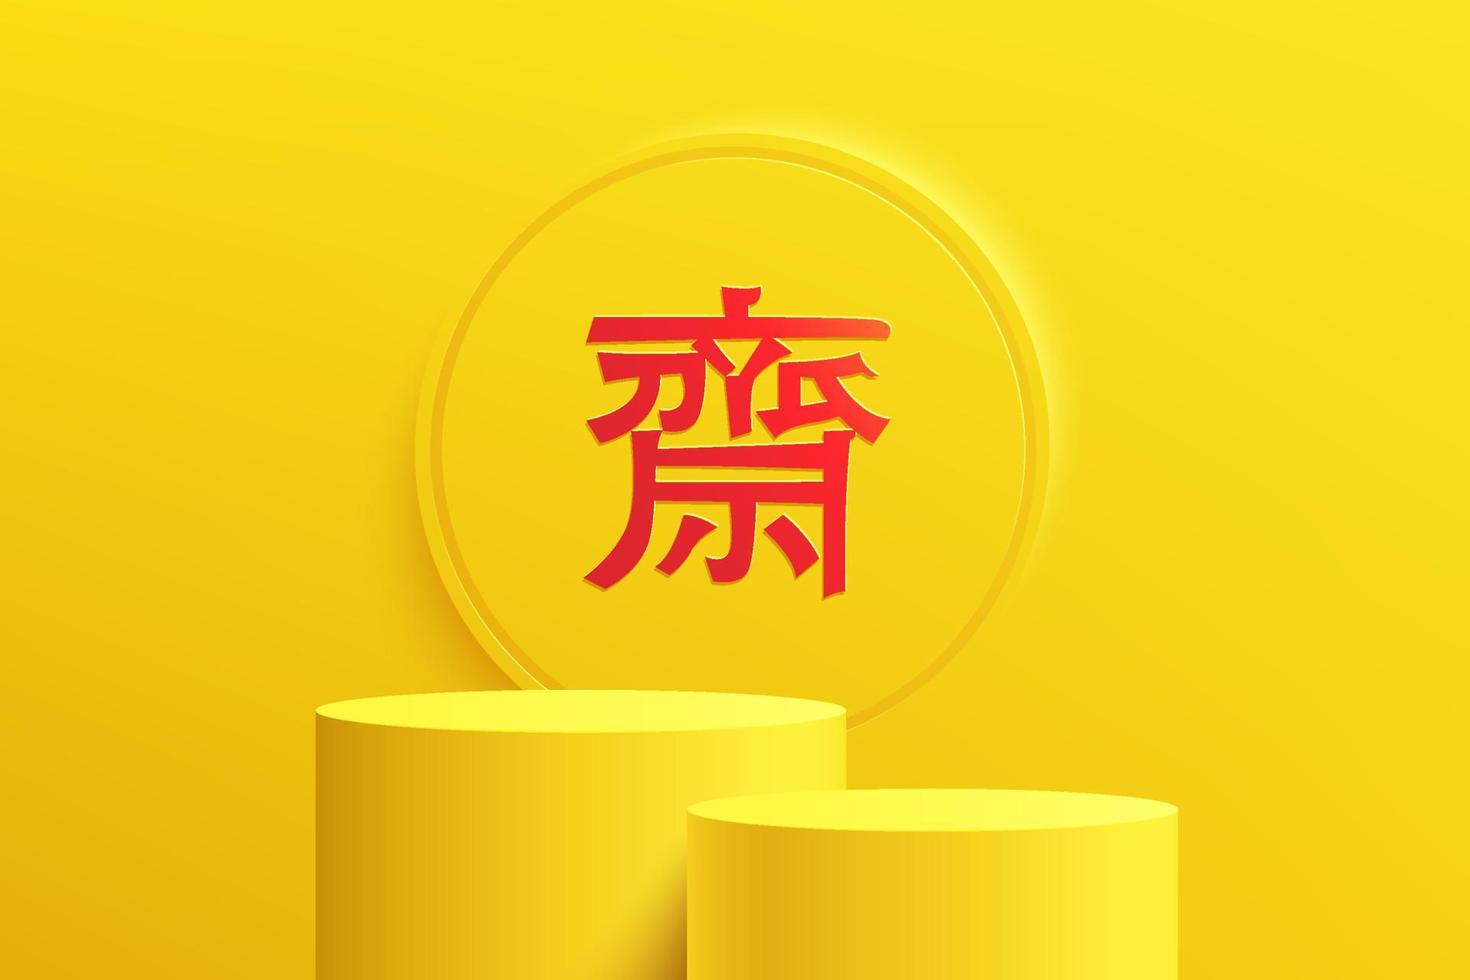 podio de pedestal abstracto 3d amarillo de 2 cilindros con fondo circular y símbolo del festival vegetariano chino. Escena del festival de nueve dioses emperadores para la presentación de productos. diseño de representación vectorial. vector